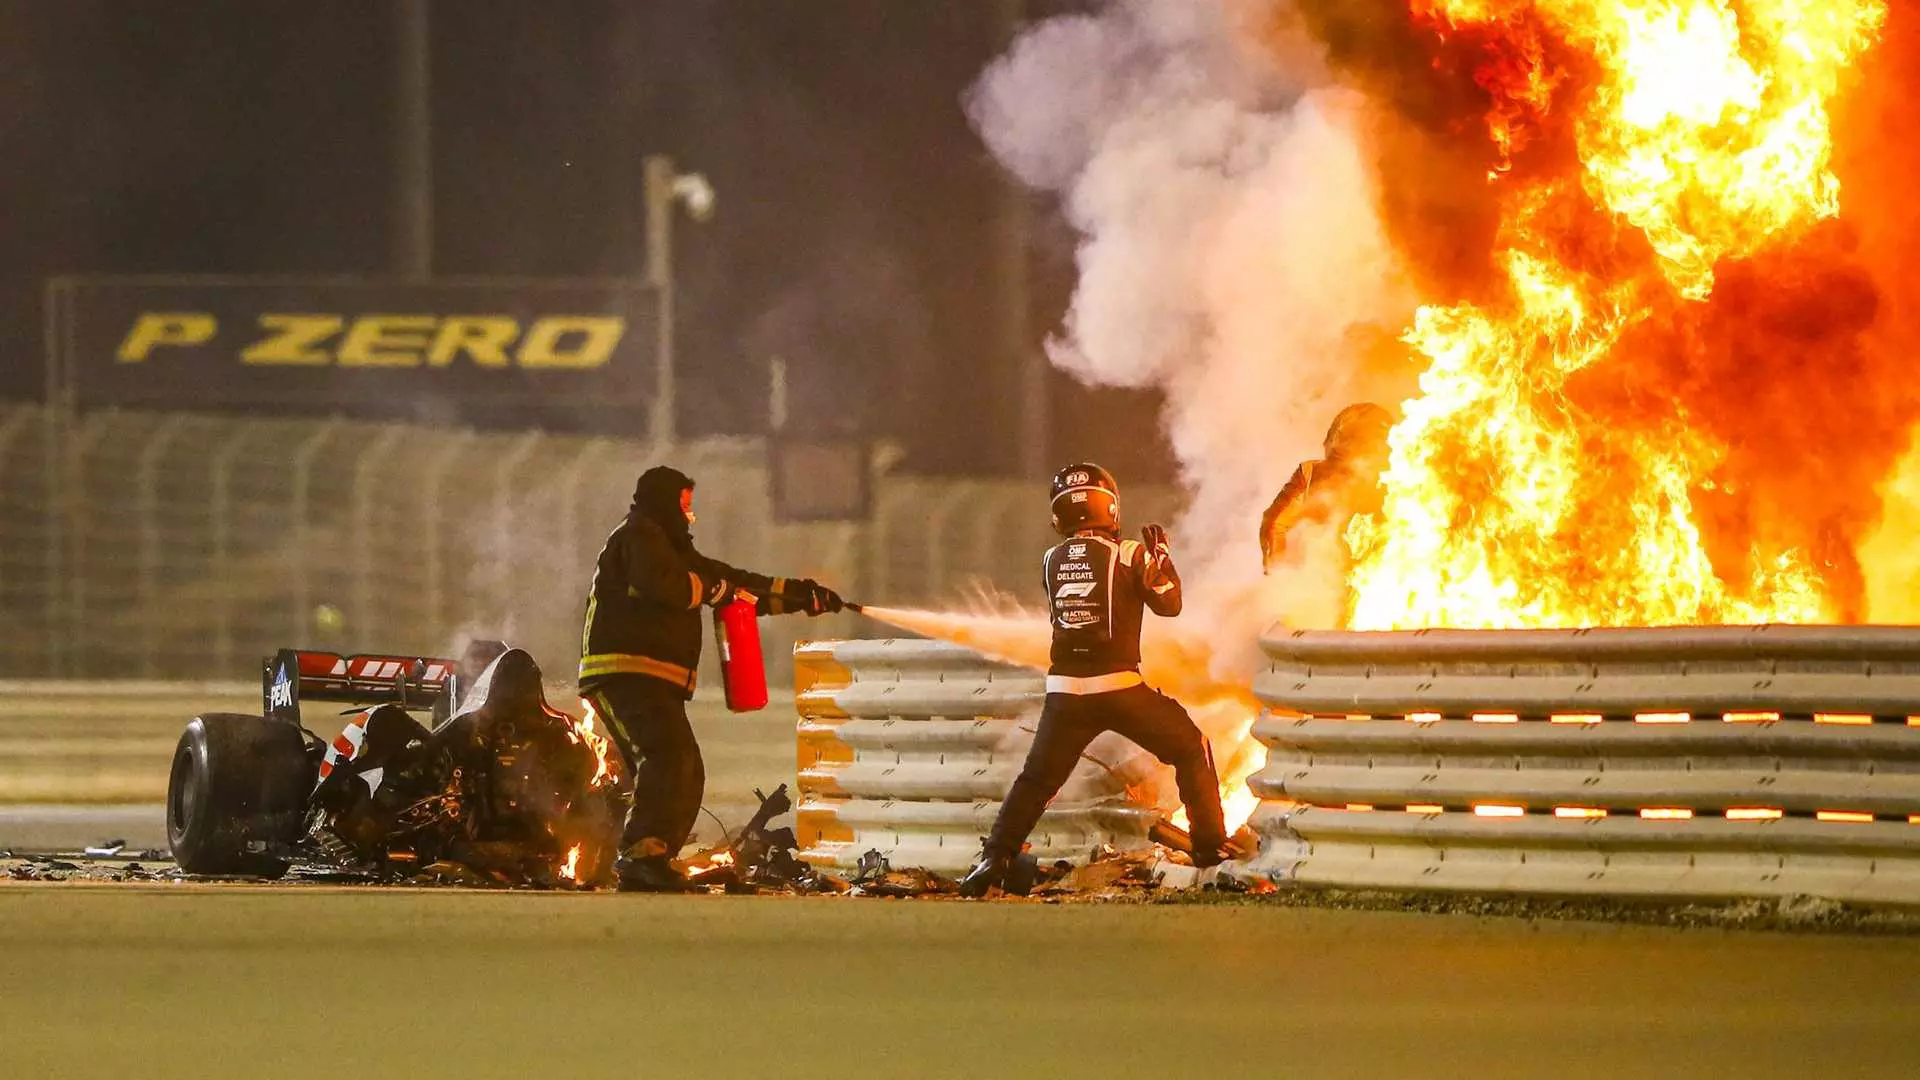 خروج معجزه آسا رومن گروژان از میان آتش در مسابقه جایزه بزرگ بحرین در فصل 2020 مسابقات فرمول یک